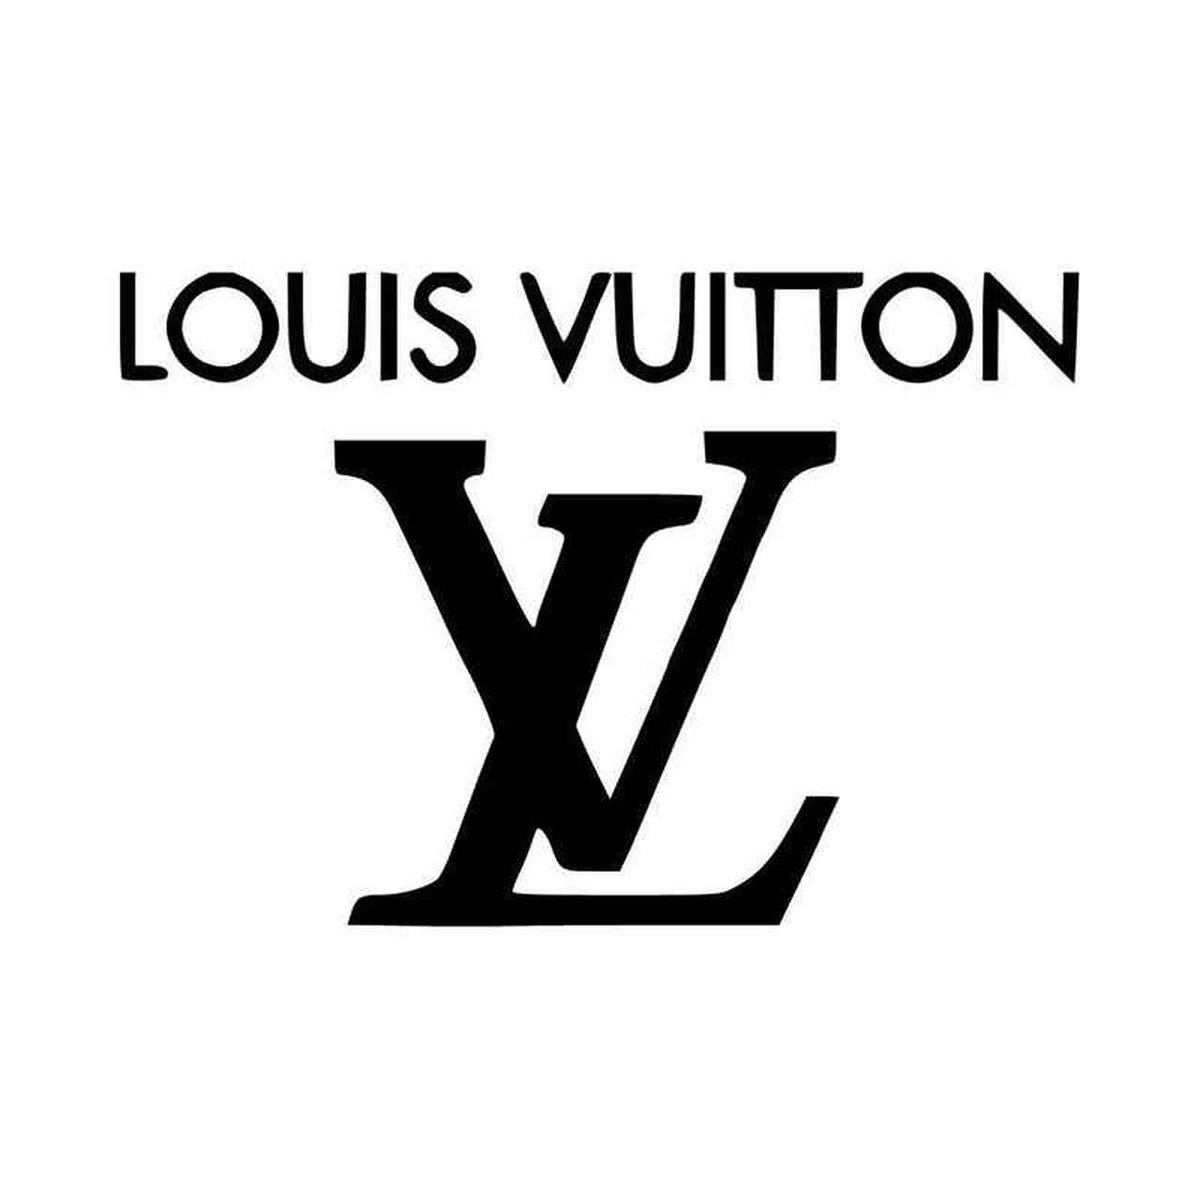 SHOP  LOUIS VUITTON COLLECTION – Worth The Wait